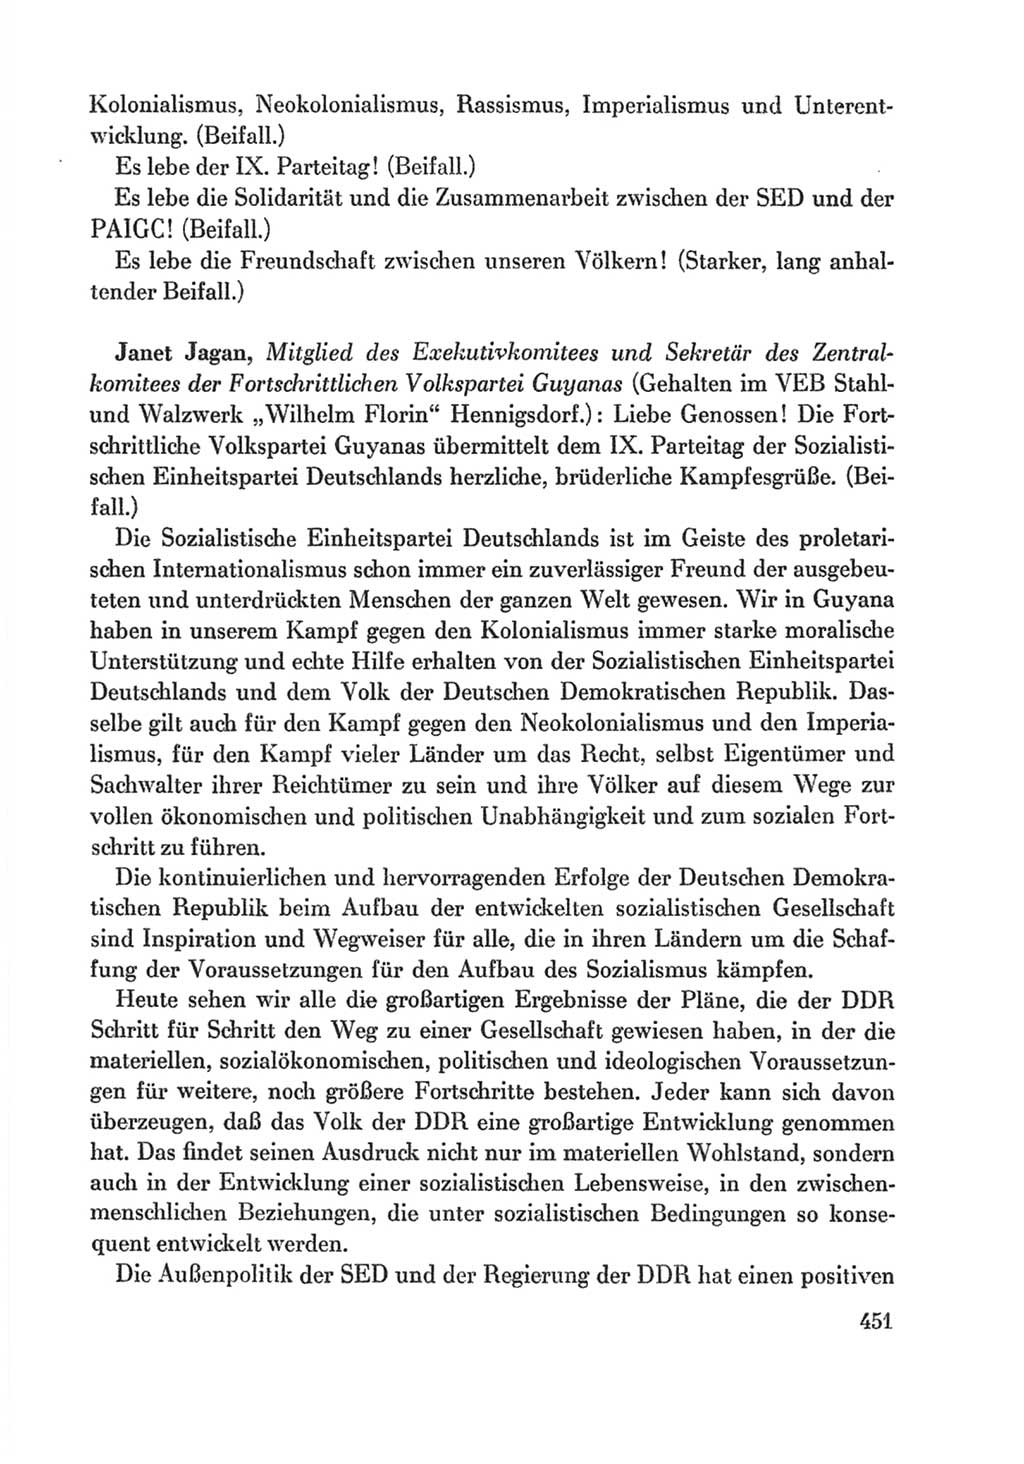 Protokoll der Verhandlungen des Ⅸ. Parteitages der Sozialistischen Einheitspartei Deutschlands (SED) [Deutsche Demokratische Republik (DDR)] 1976, Band 1, Seite 451 (Prot. Verh. Ⅸ. PT SED DDR 1976, Bd. 1, S. 451)